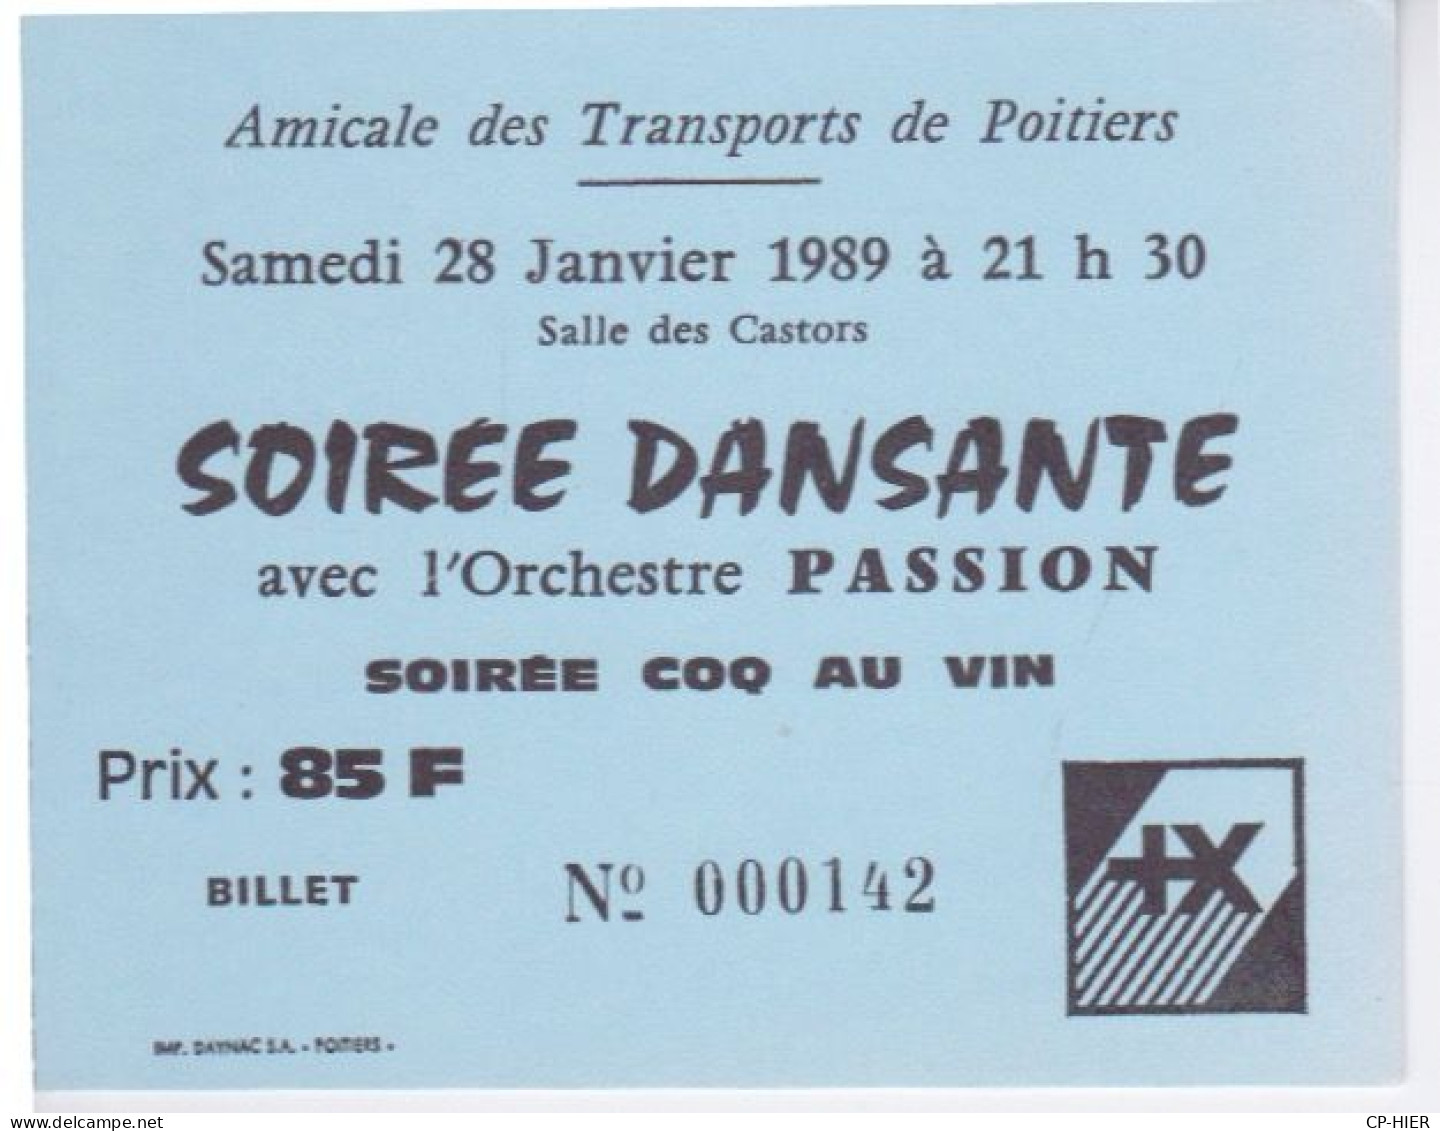 86 - POITIERS - AMICALE DES TRANSPORTS - SOIREE DANSANTE  -  ORCHESTRE PASSION - SOIREE COQ AU VIN SALLE CASTORS - Biglietti D'ingresso